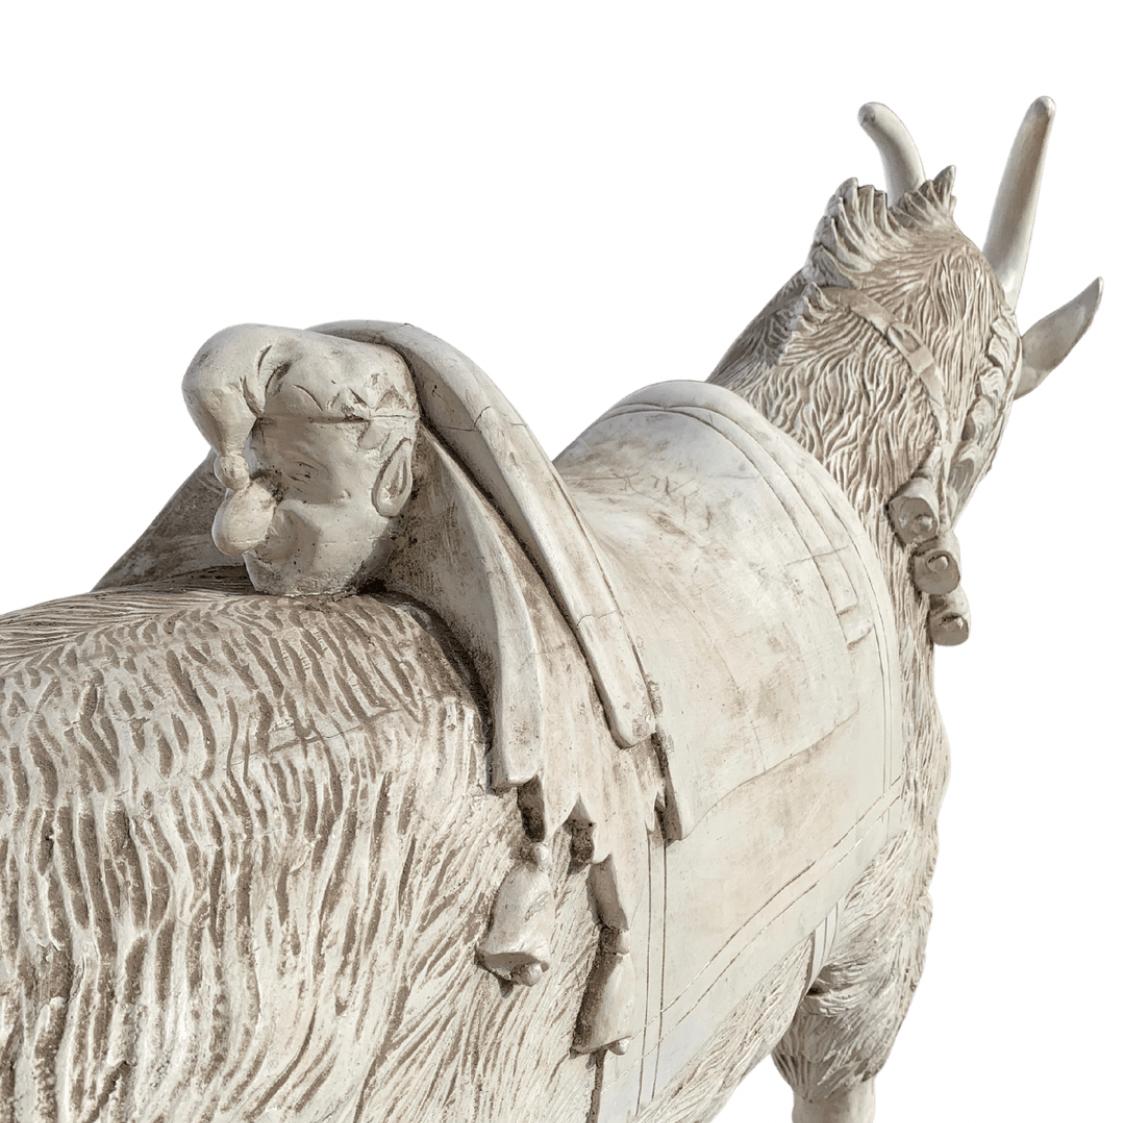 Chèvre de carrousel en bois de taille normale avec Punchinello sculpté sur l'arrière de la selle. Guignol était l'un des personnages les plus populaires du début du siècle, connu de la plupart des enfants.
Sculpté dans le style de DC Muller